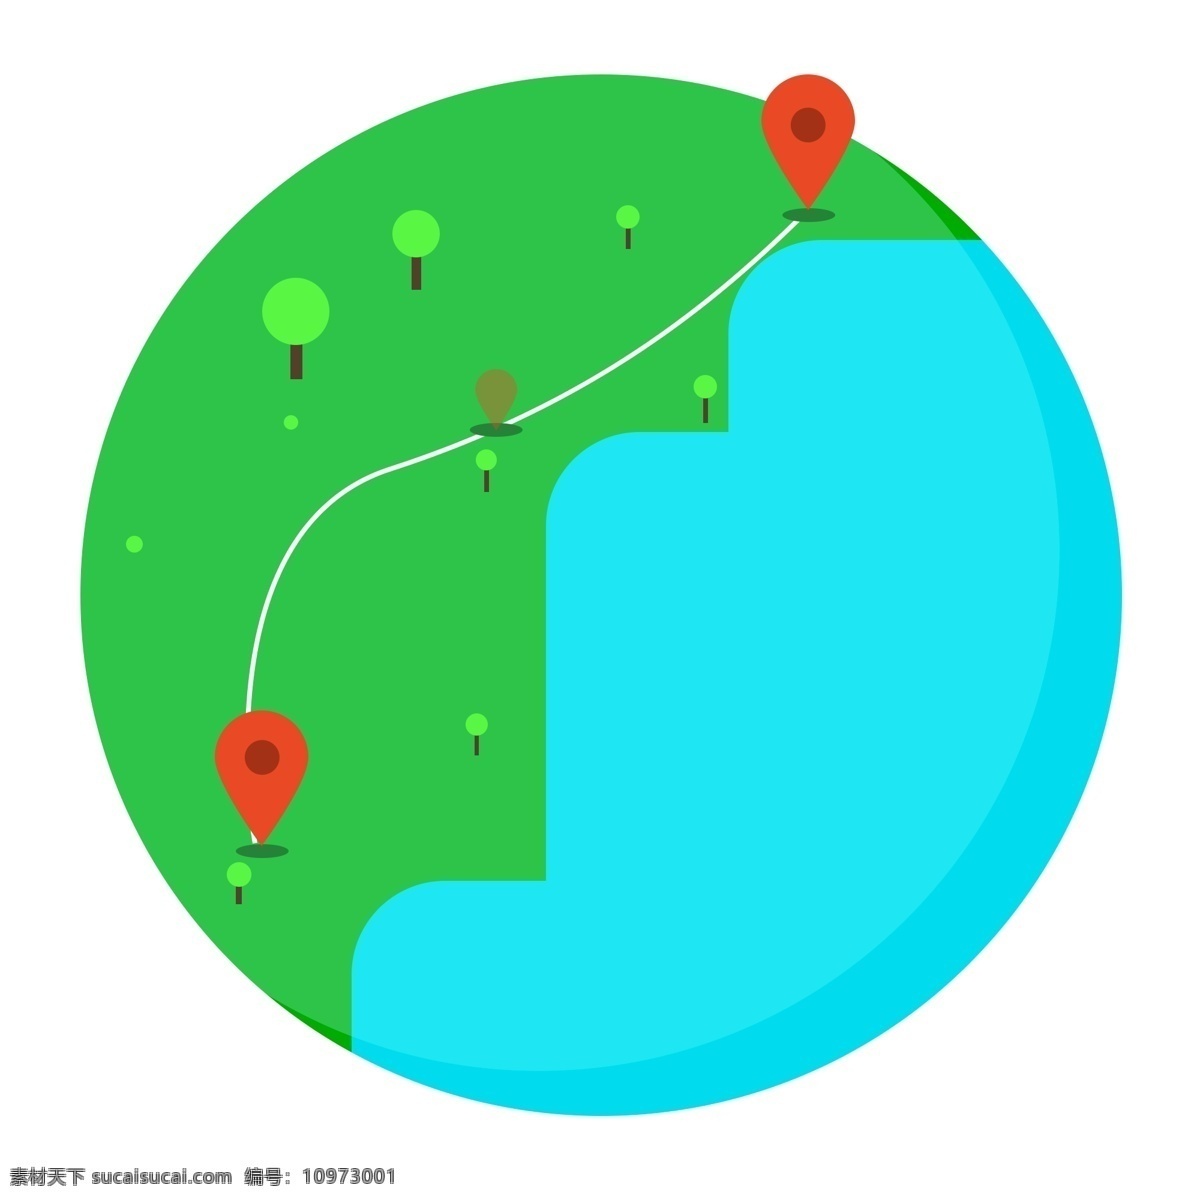 地球 上标 记 旅游 线路图 兴趣爱好 蓝色 绿色 树木 圆圆的地球上 标记 经过 地方 呼吸